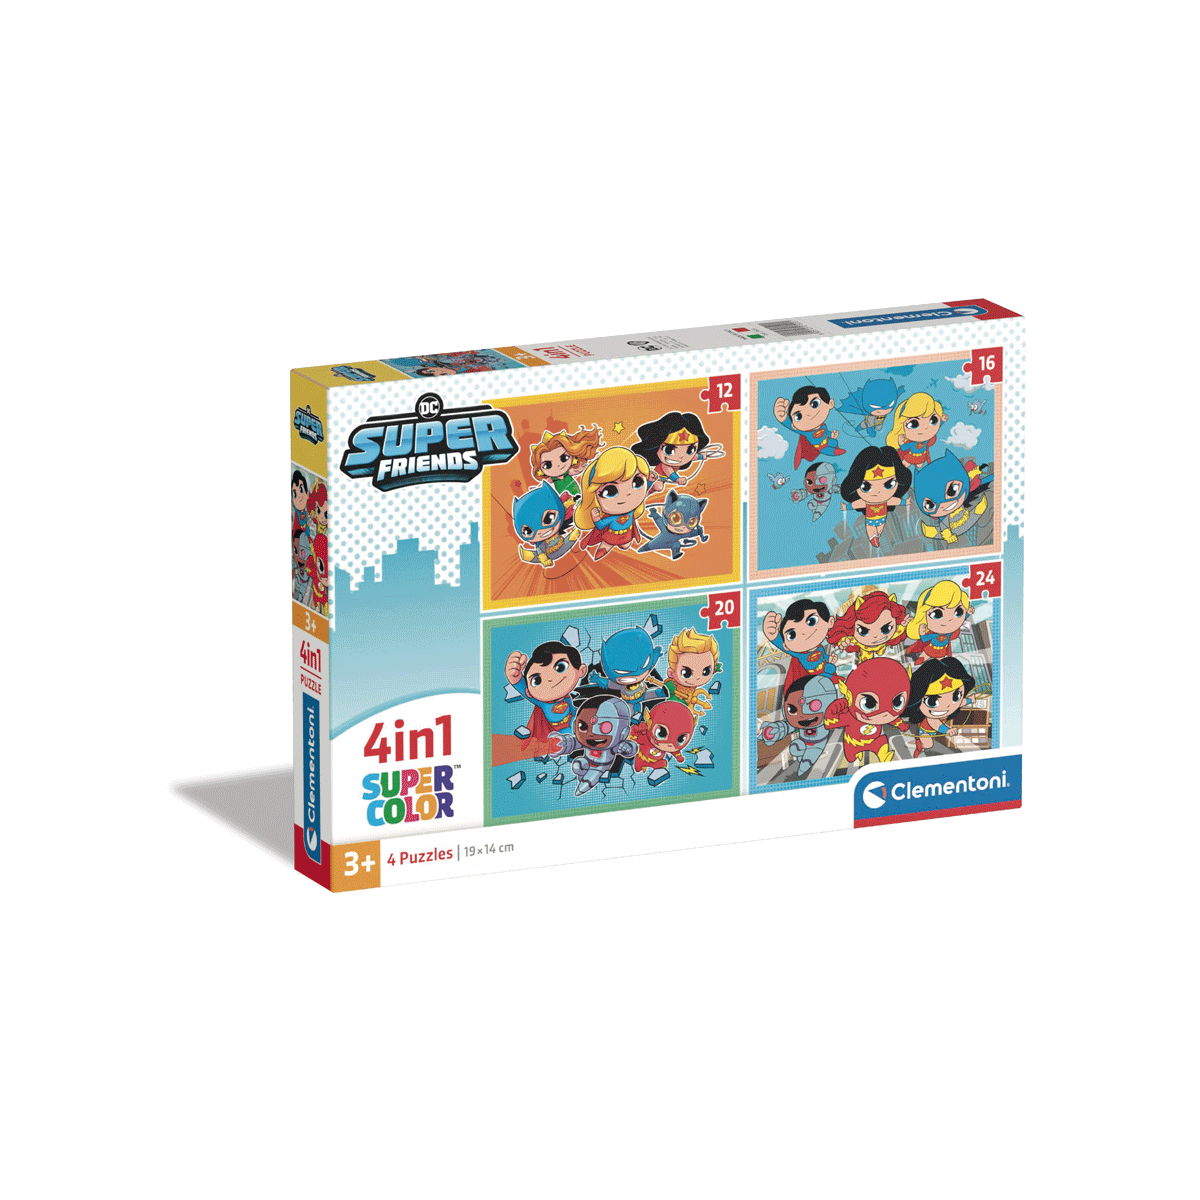 Clementoni supercolor puzzle 4in1 dc superfriends - 1x12 + 1x16 + 1x20 + 1x24 pezzi, puzzle bambini 3 anni - CLEMENTONI